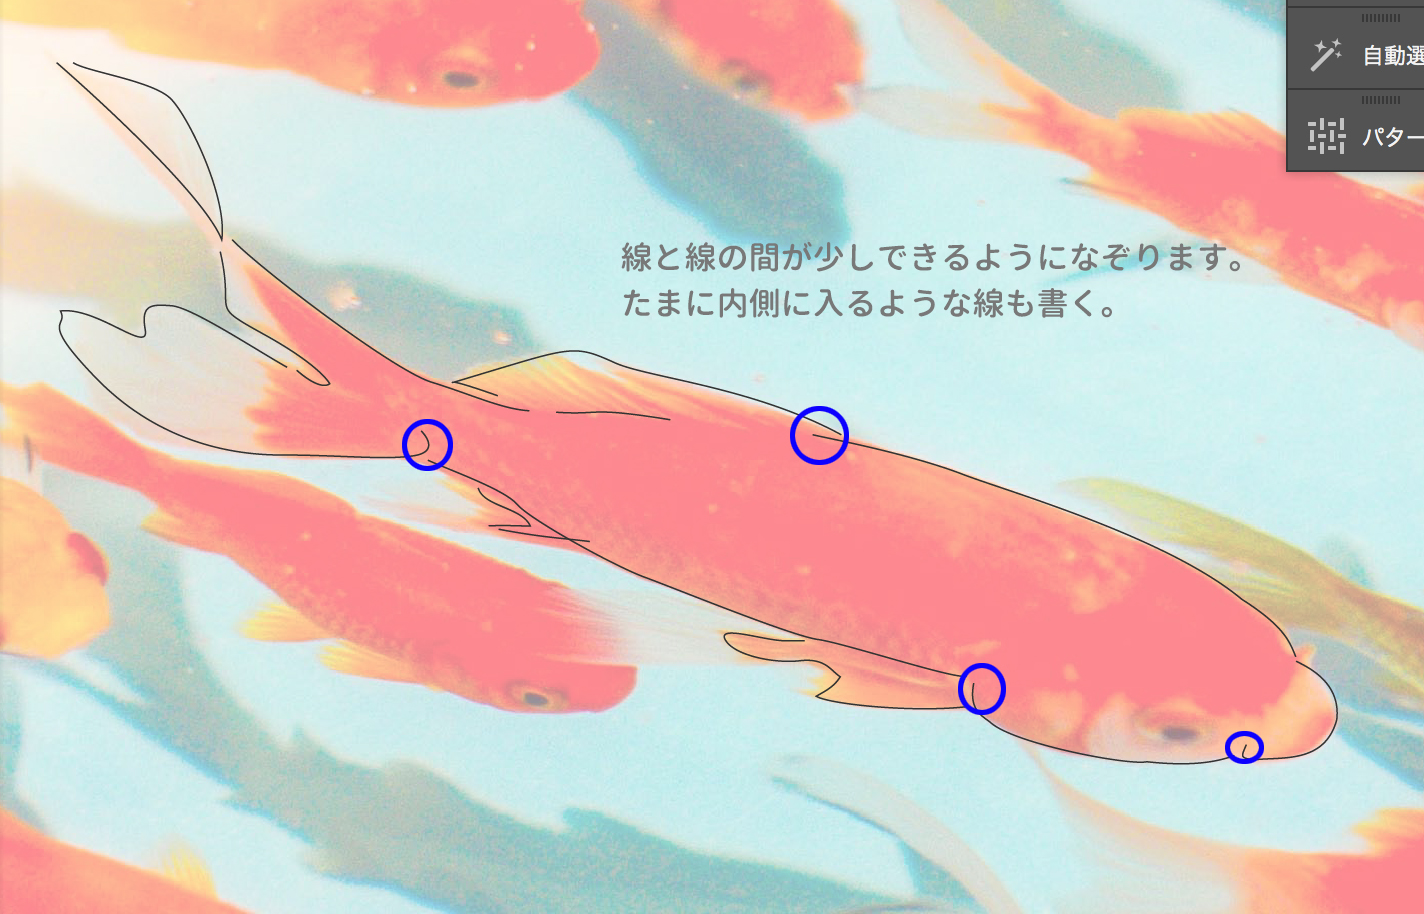 Japan Image 金魚 イラスト 綺麗